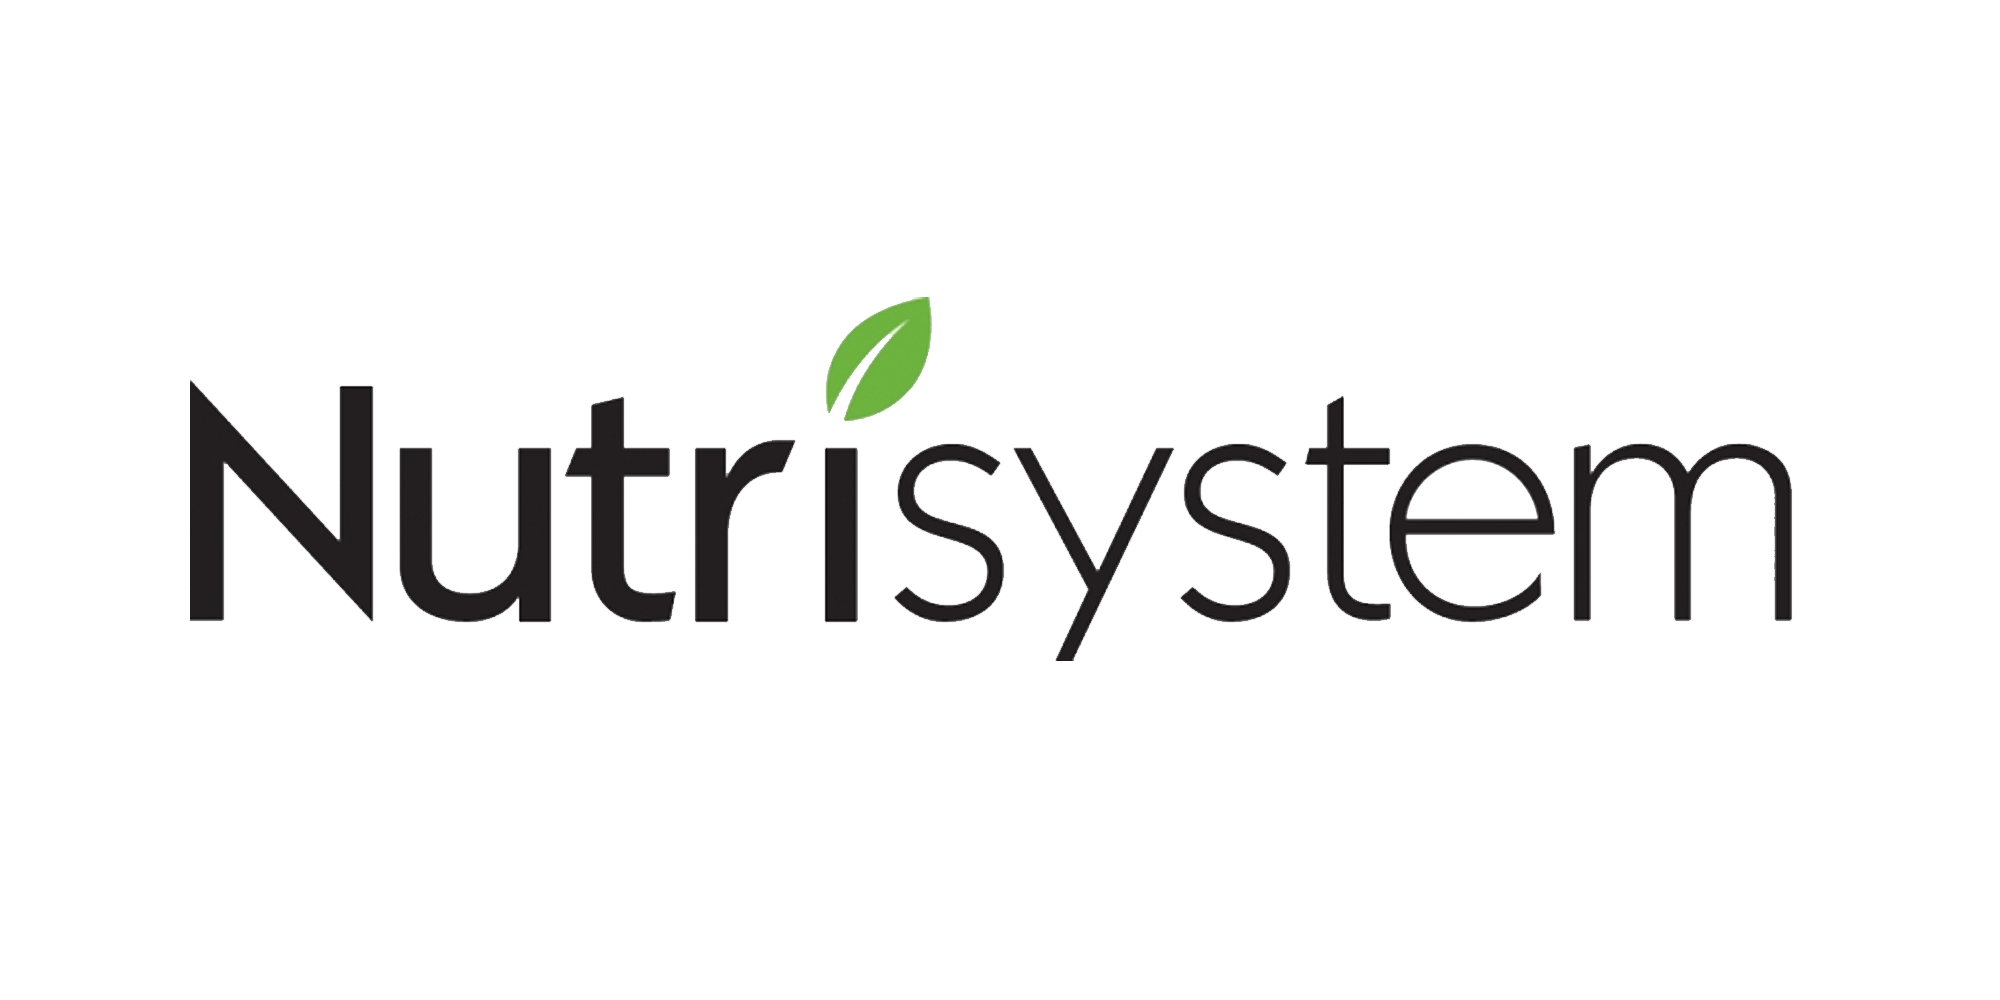 Nutrisystem Logo - Nutrisystem | Logopedia | FANDOM powered by Wikia